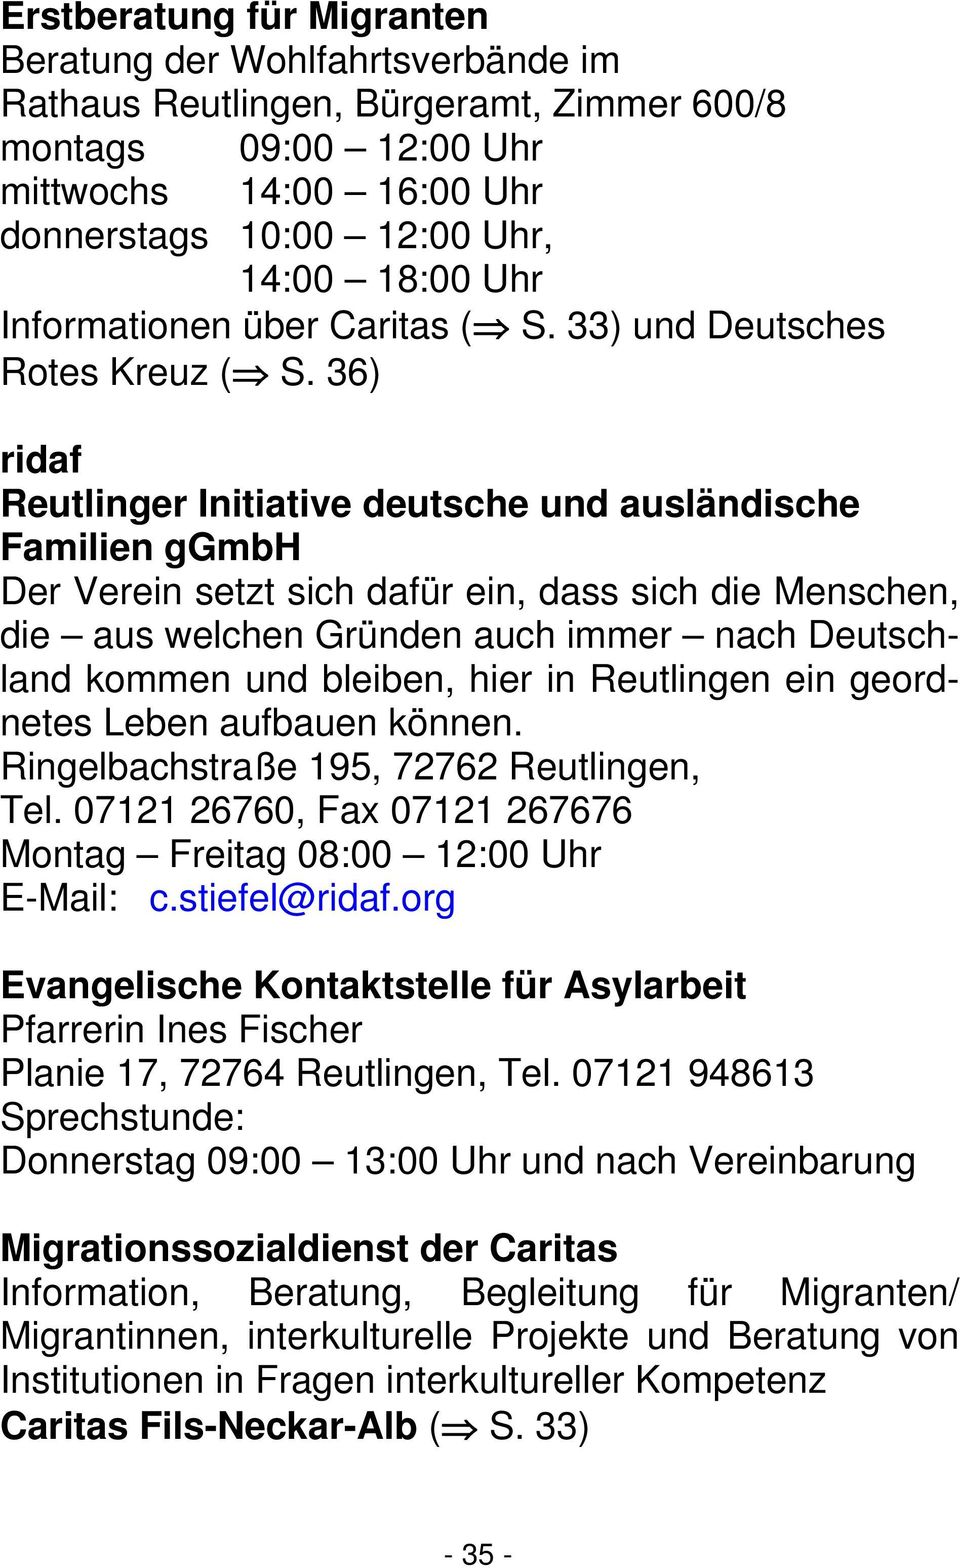 36) ridaf Reutlinger Initiative deutsche und ausländische Familien ggmbh Der Verein setzt sich dafür ein, dass sich die Menschen, die aus welchen Gründen auch immer nach Deutschland kommen und